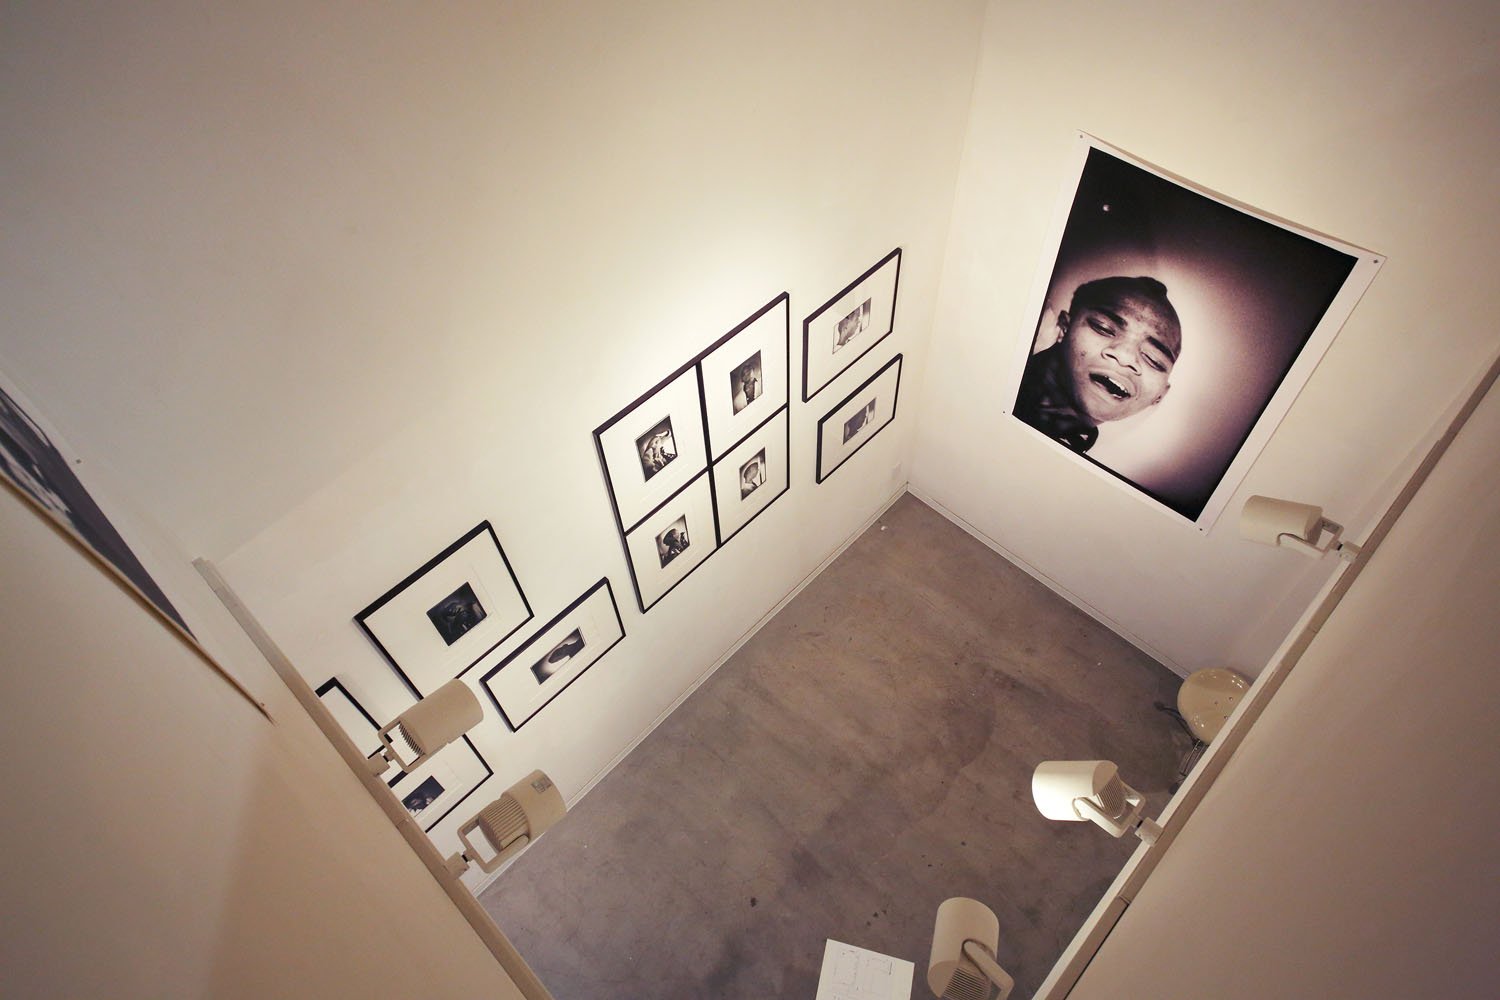 ニコラス･テイラーが撮影したプライベートなバスキアの写真展を実施。